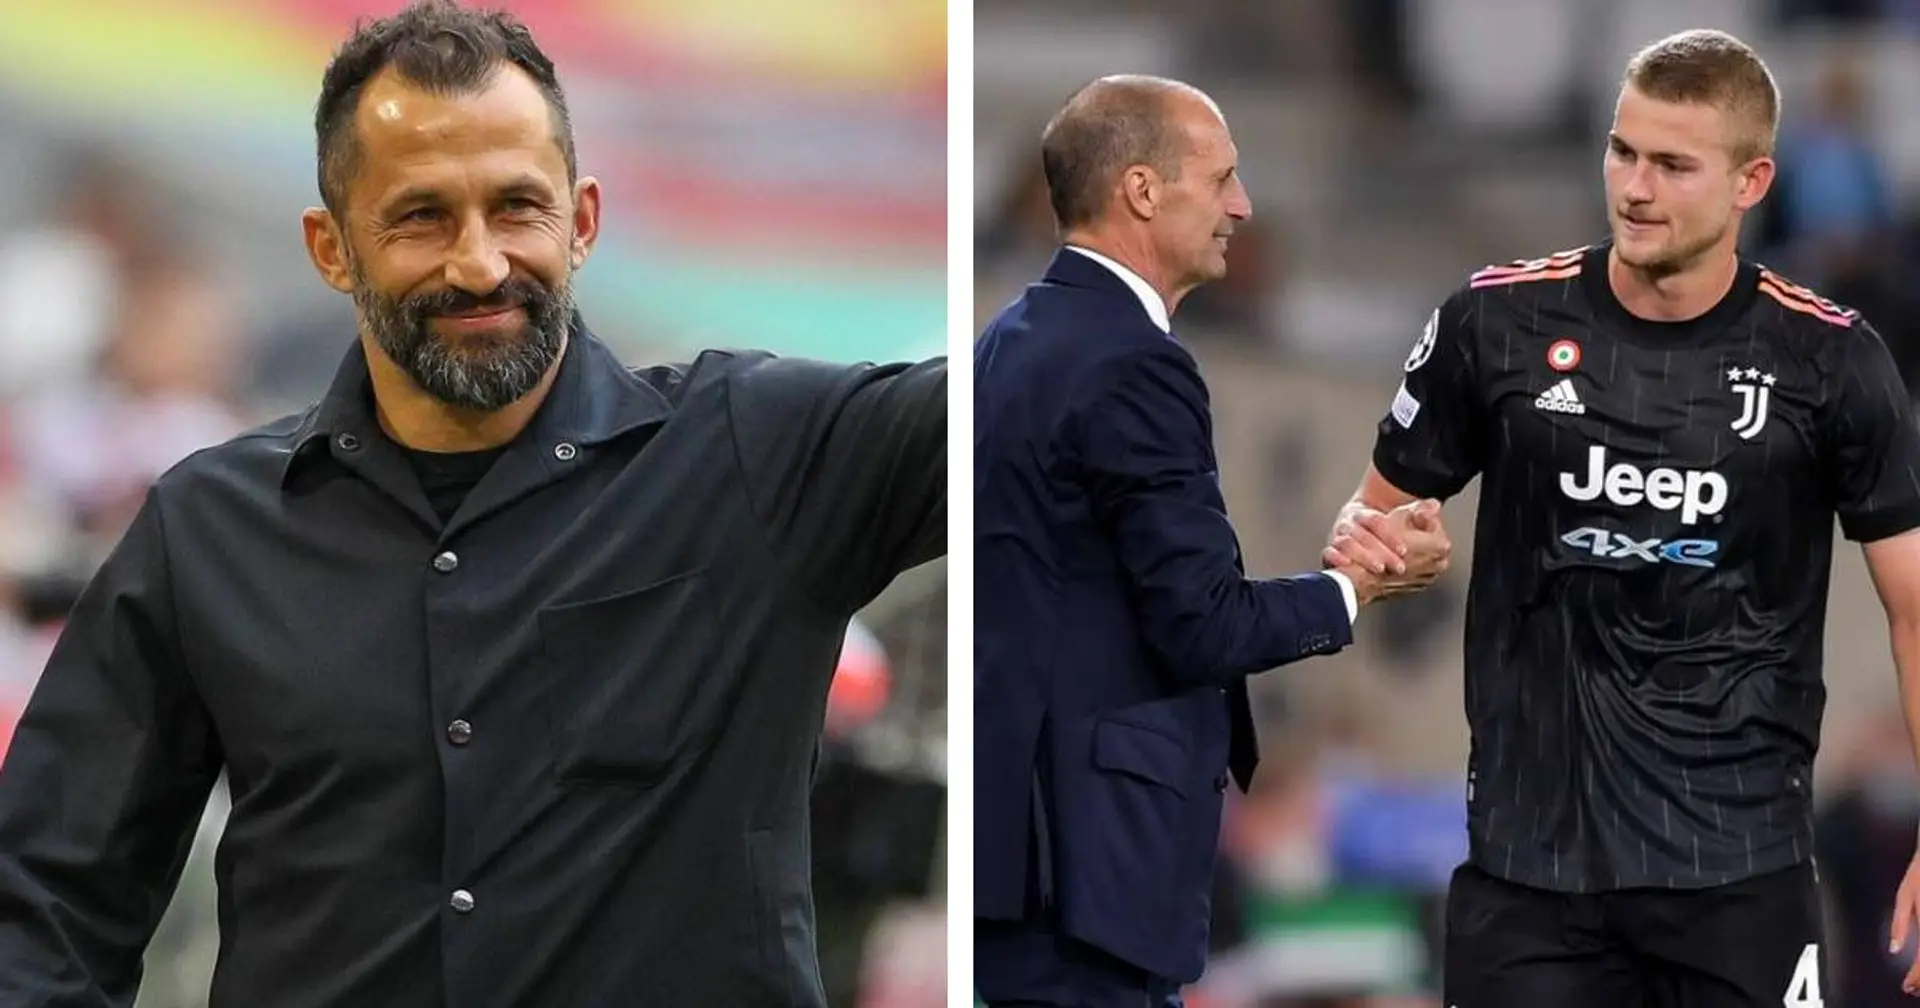 "Es kann alles passieren": Juve-Coach Allegri schließt de Ligts Abschied nicht aus